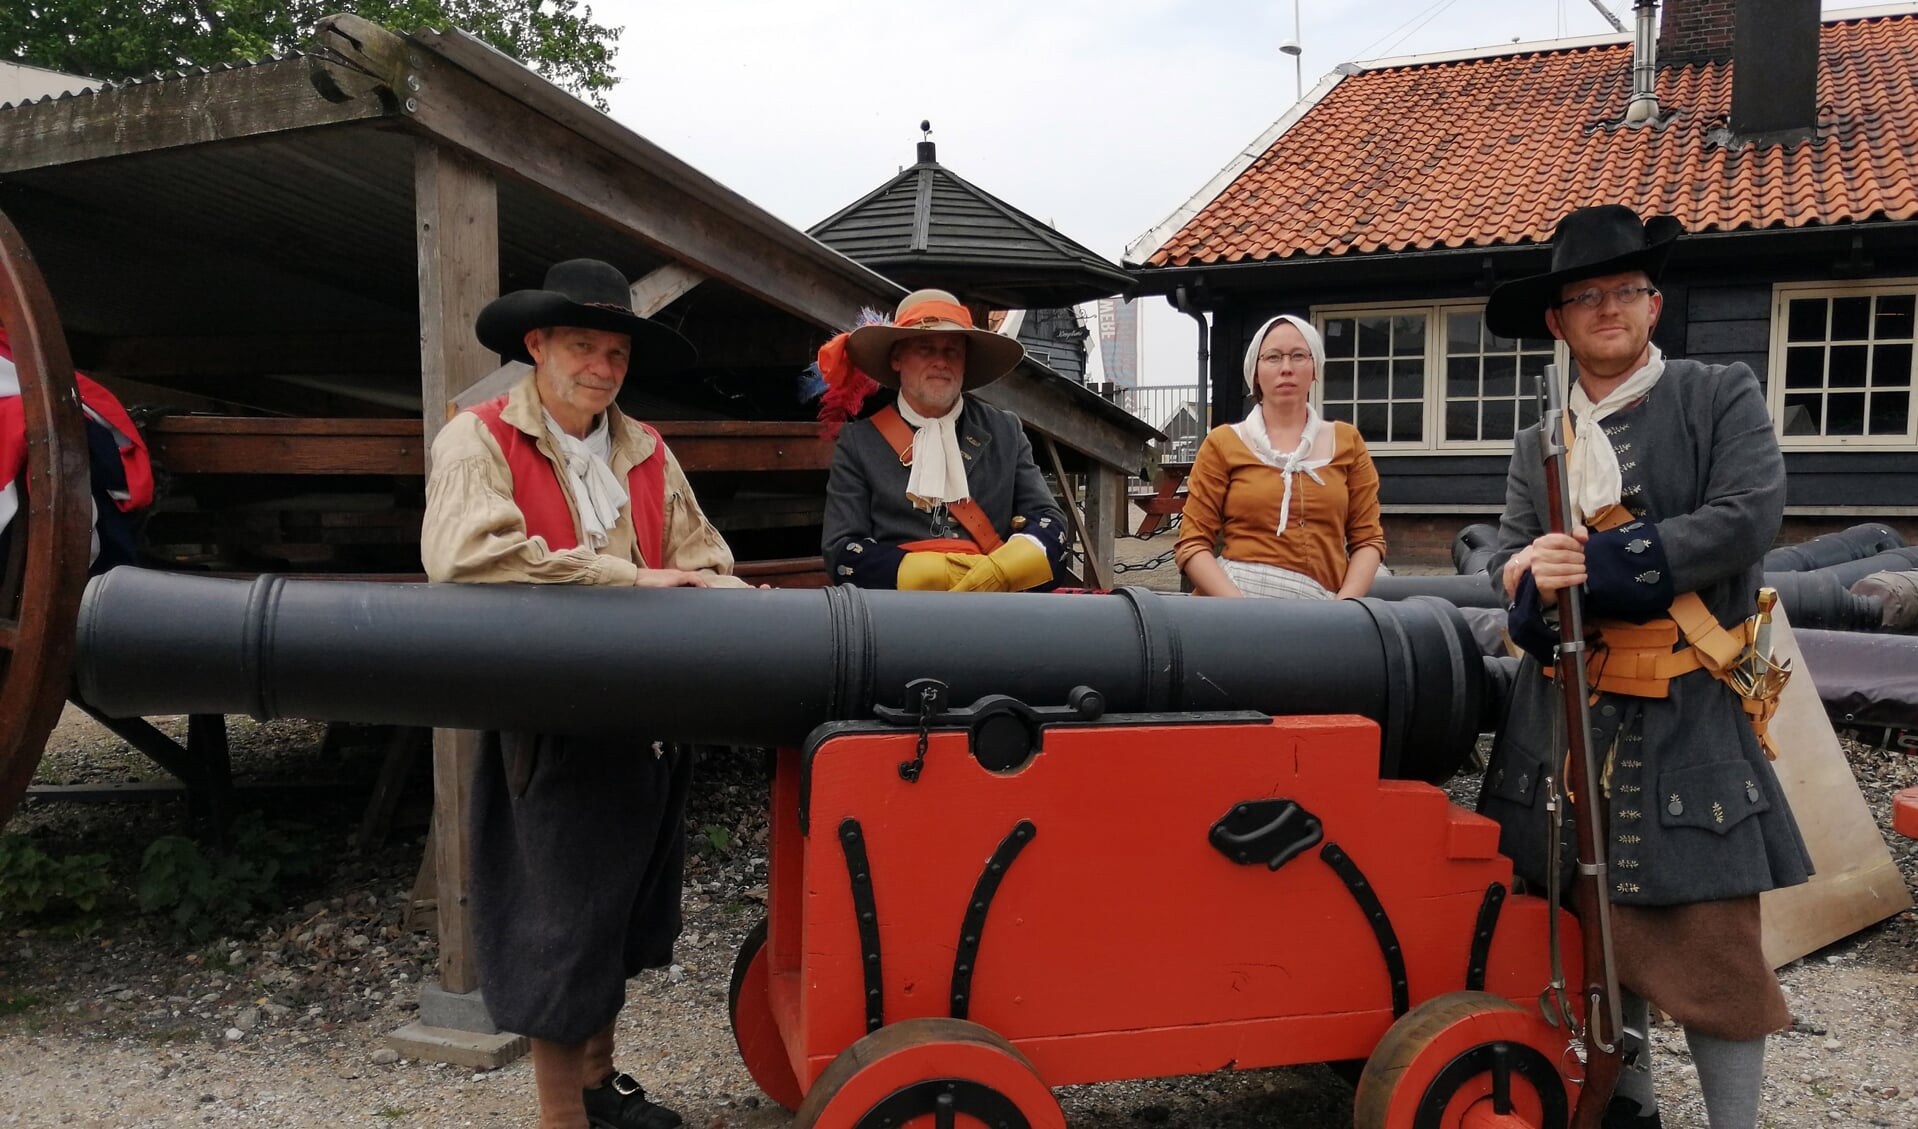 Soldaten van Equipage De Delft bij kanon voor Nieuwerbrug op Bataviawerf.